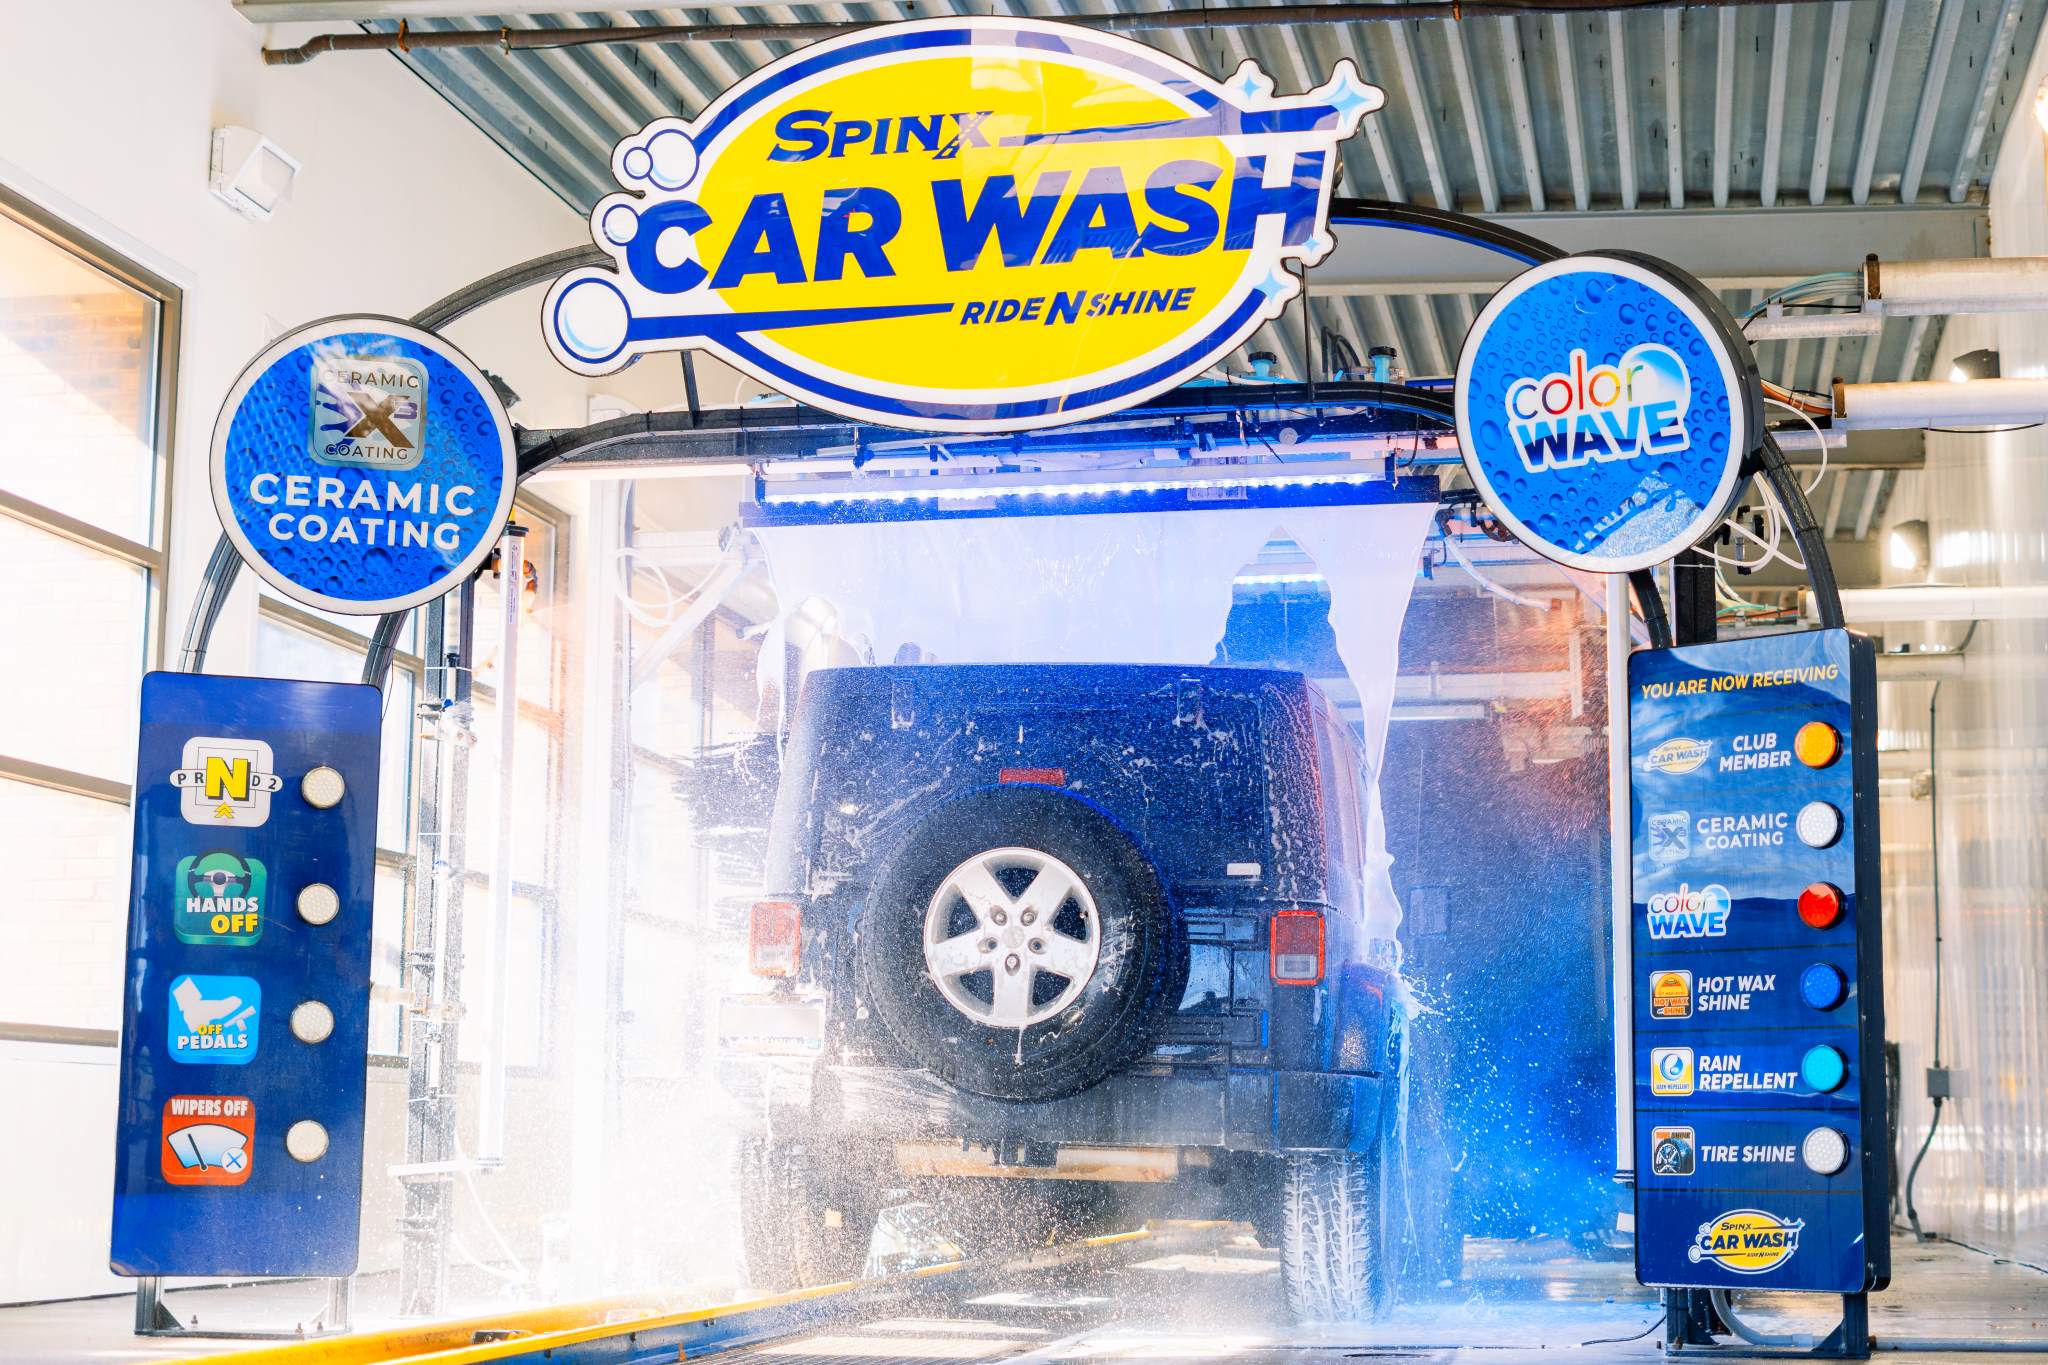 Car Wash at Spinx